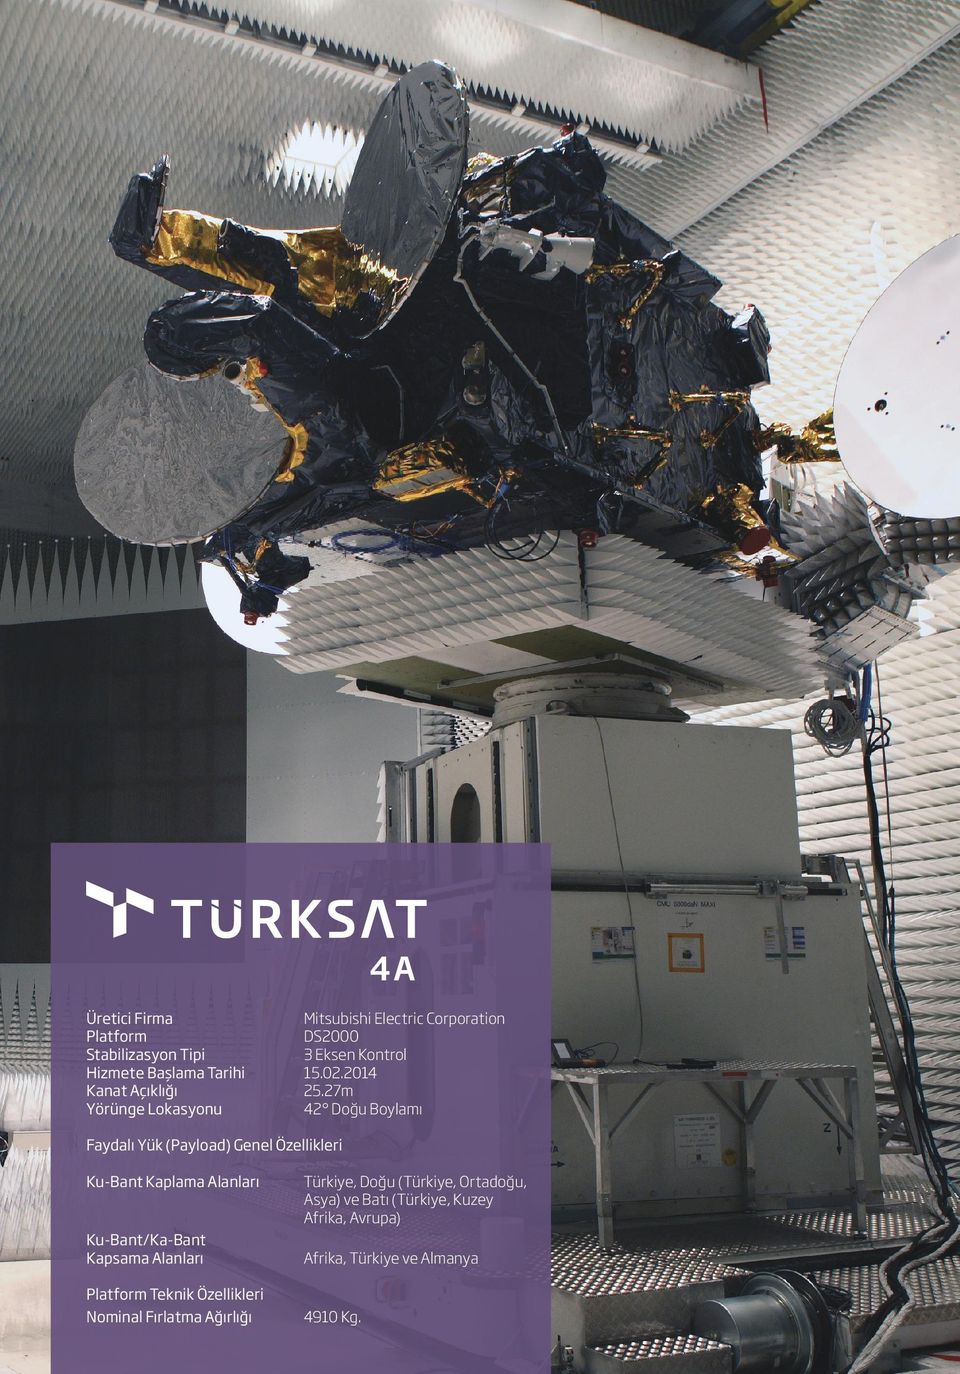 27m Yörünge Lokasyonu 42 Doğu Boylamı Faydalı Yük (Payload) Genel Özellikleri Ku-Bant Kaplama Alanları Türkiye,